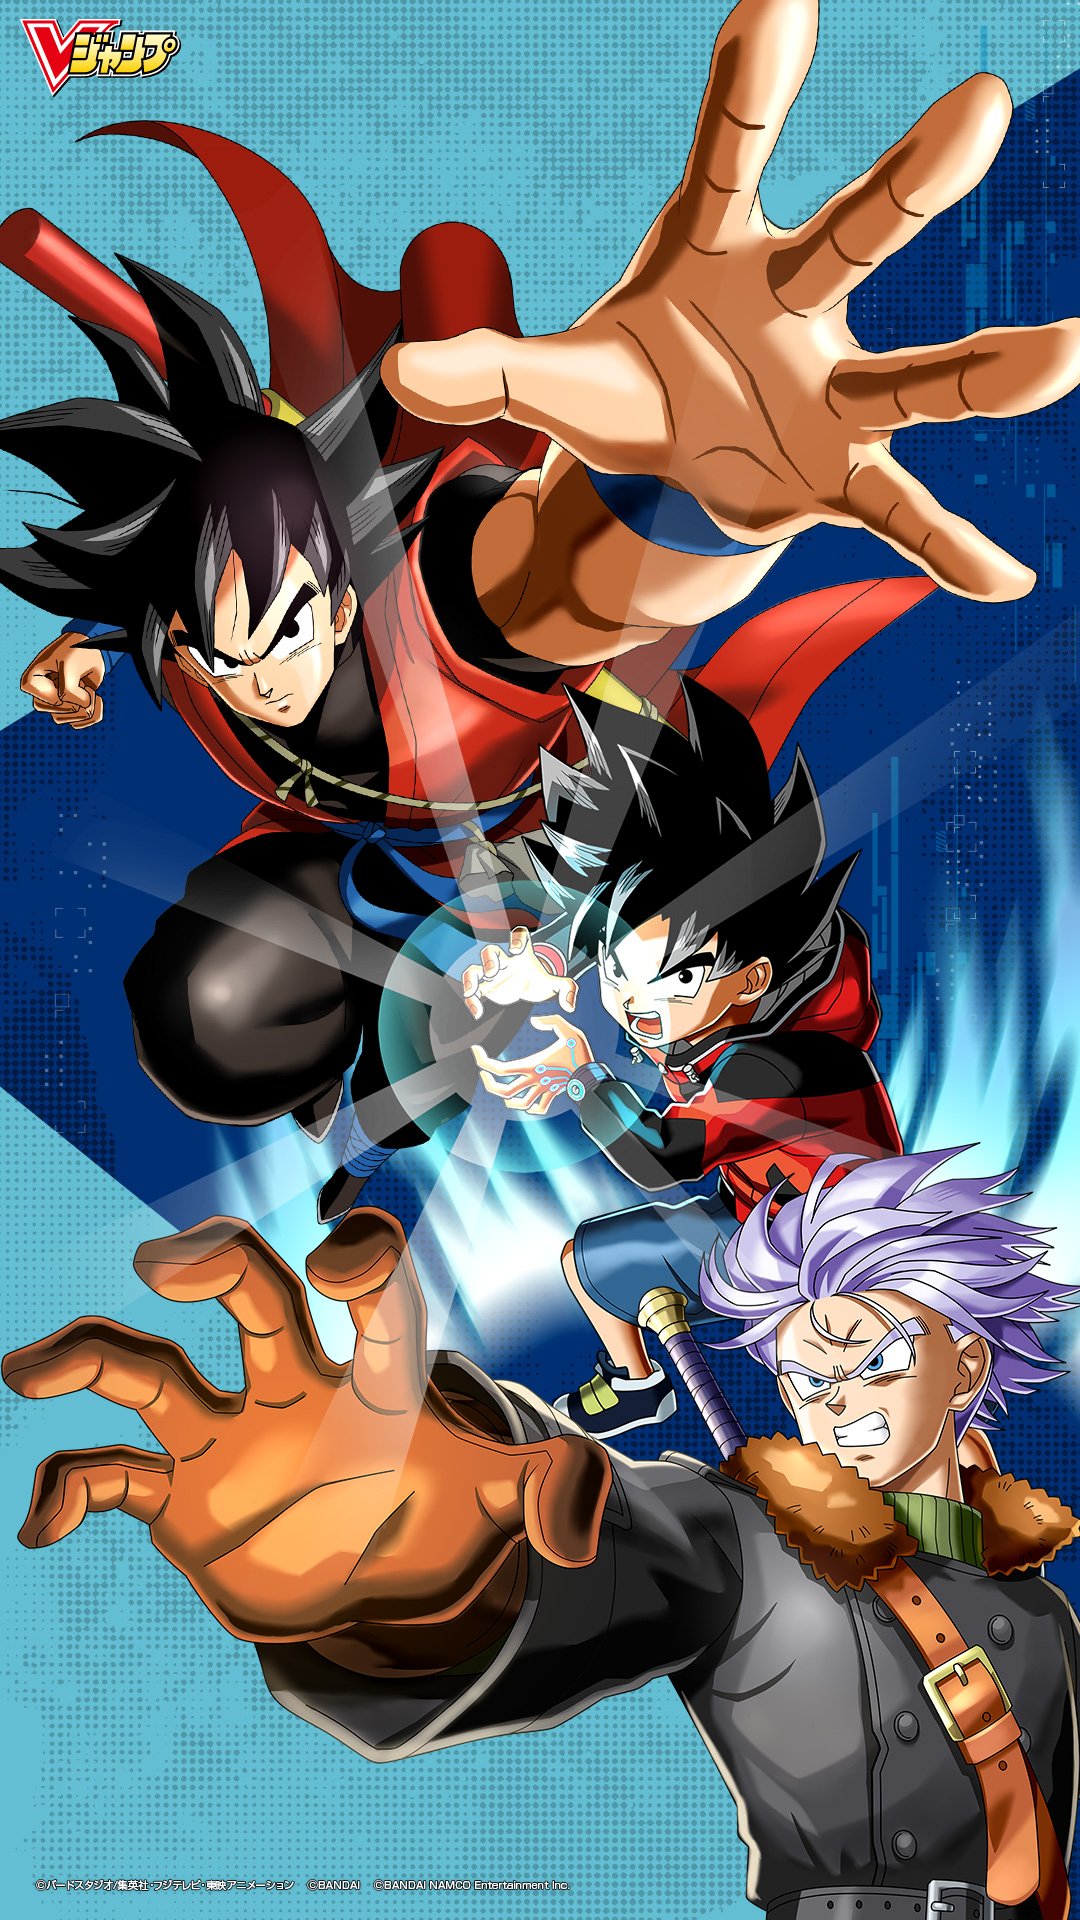 拳ロー Manga Anime Games News Japan Only スーパードラゴンボールヒーローズworld Mission Wallpaper Pc Phone Sdbh T Co 1r90zuftmj Twitter